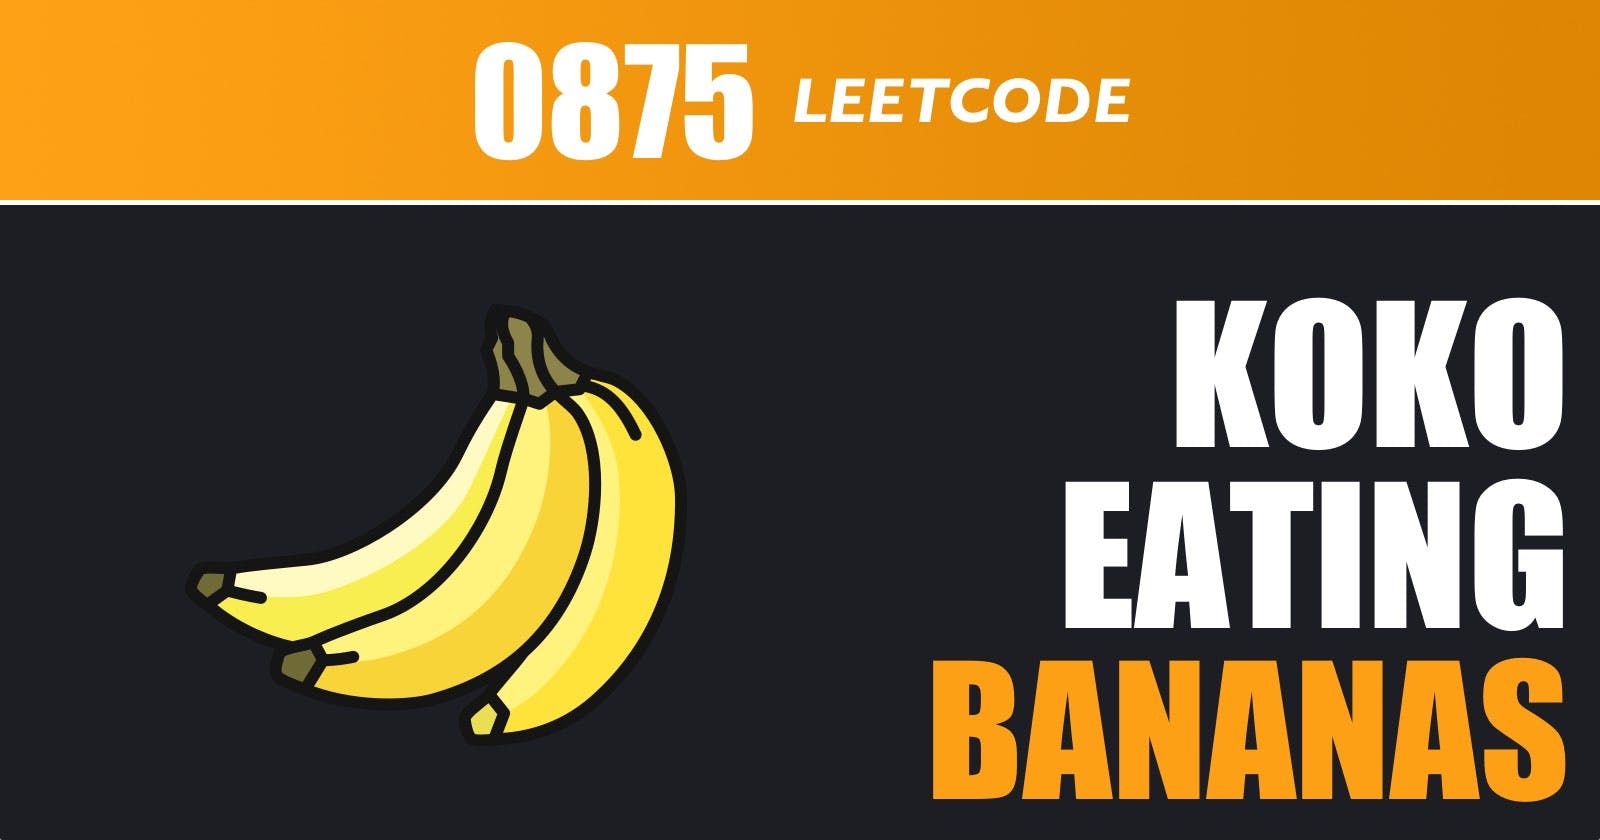 Koko Eating Bananas - Leetcode 875